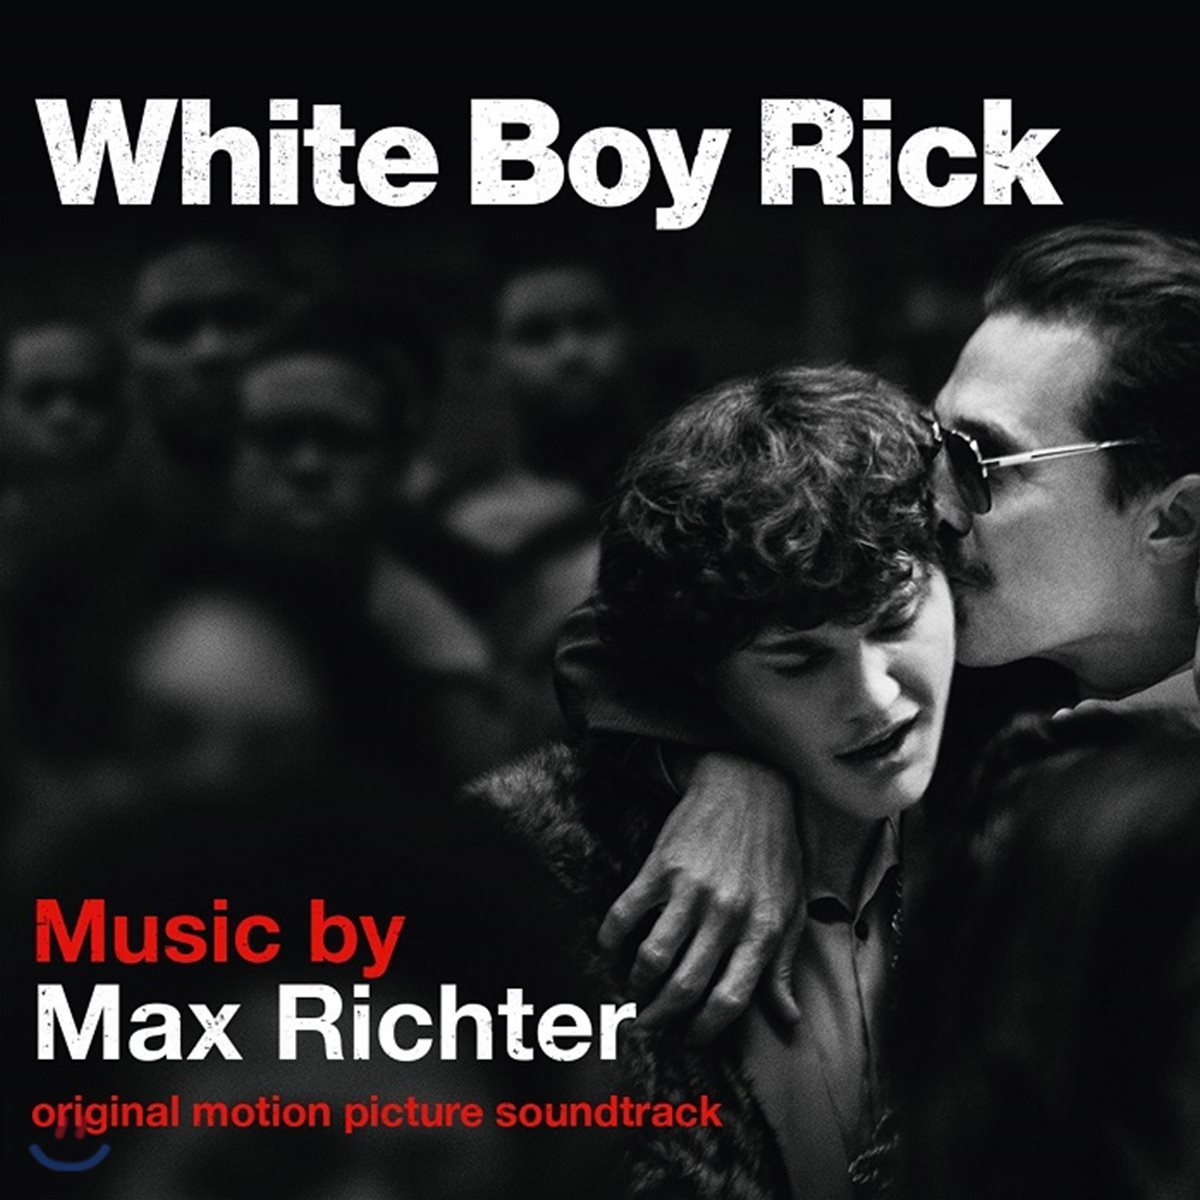 화이트 보이 릭 영화음악 (White Boy Rick OST by Max Richter 막스 리히터)